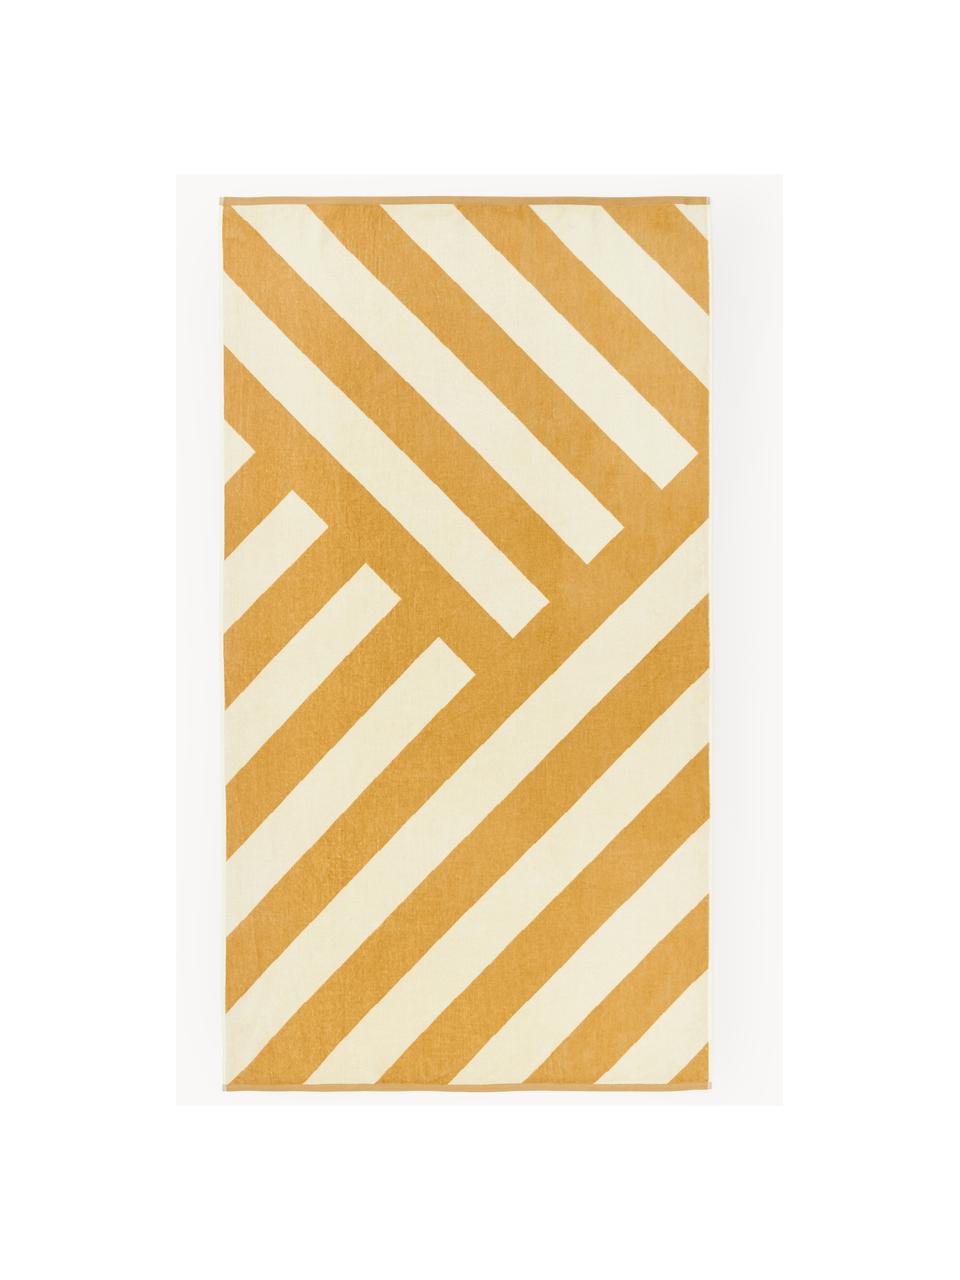 Strandlaken Suri met zigzag patroon, Zonnengeel, gebroken wit, B 90 x L 170 cm